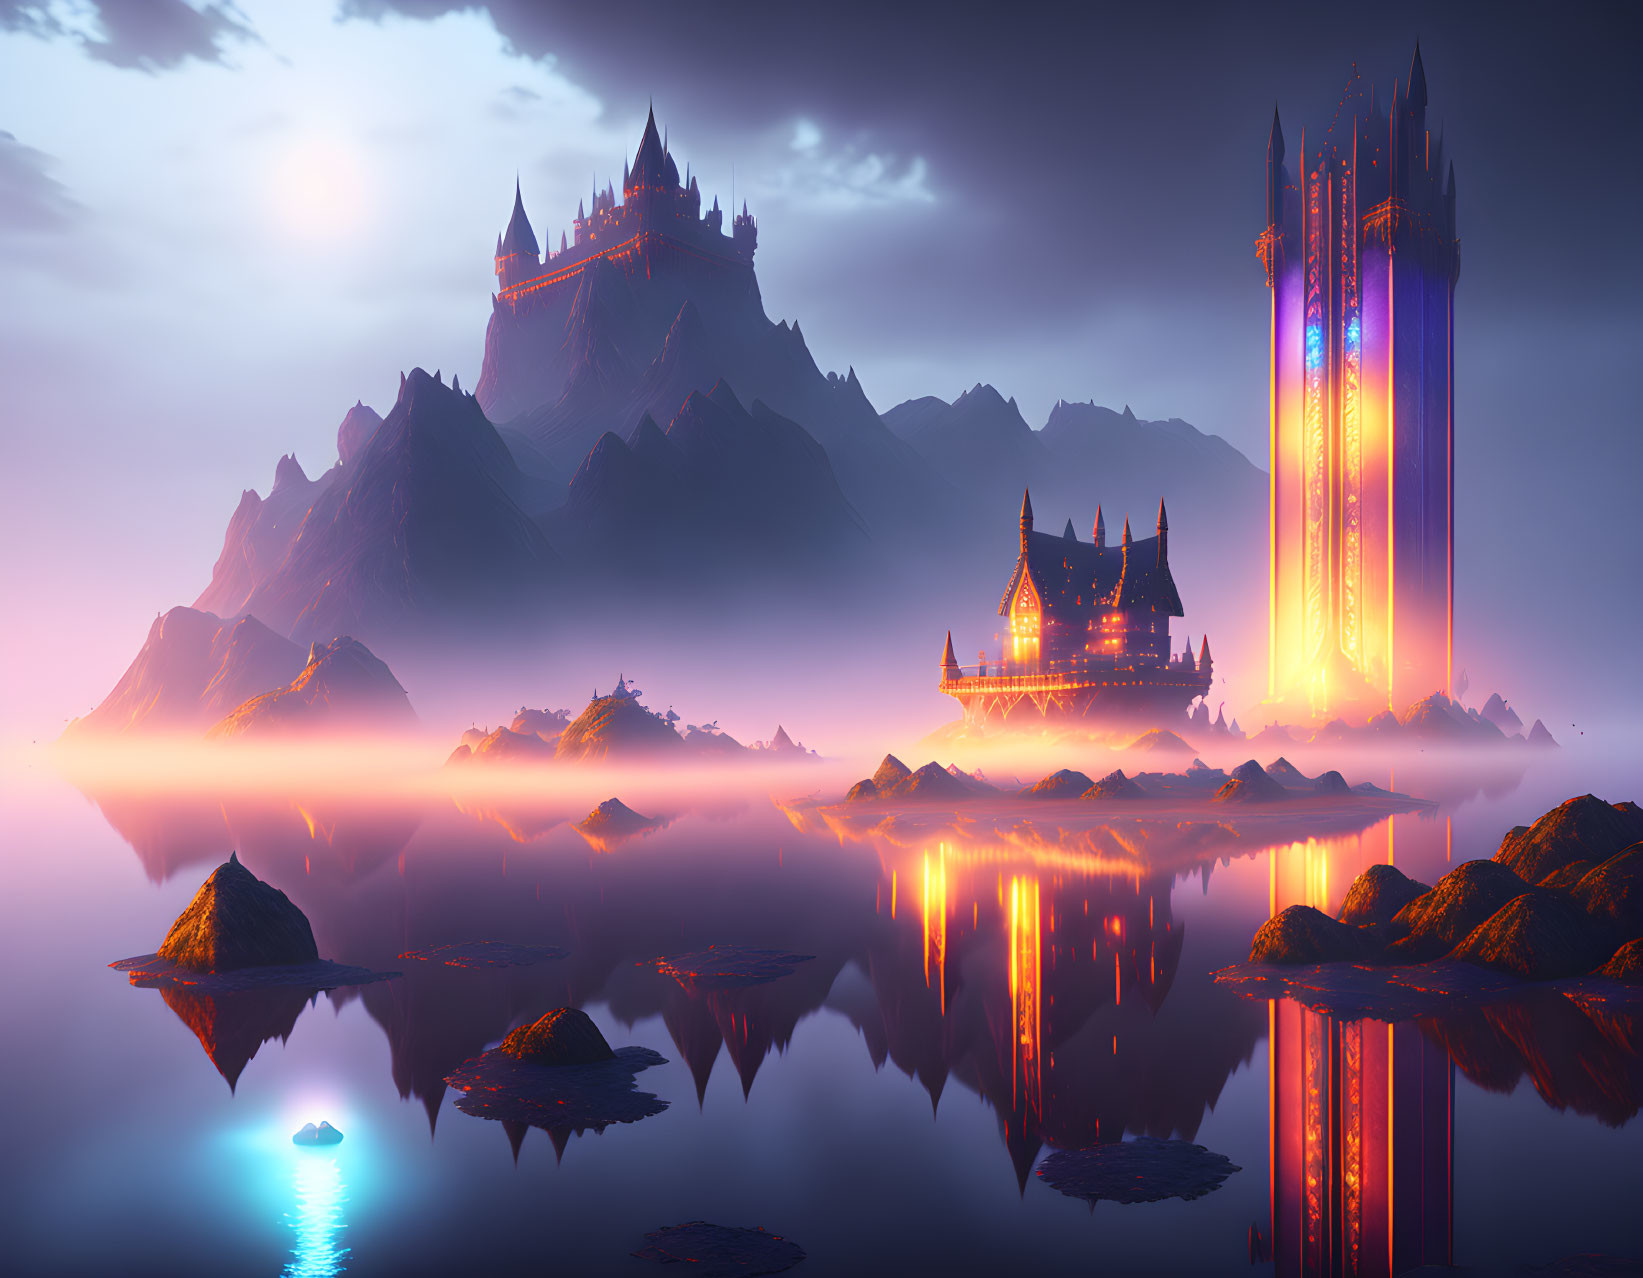 Illuminated Castles Reflecting on Tranquil Lake at Twilight